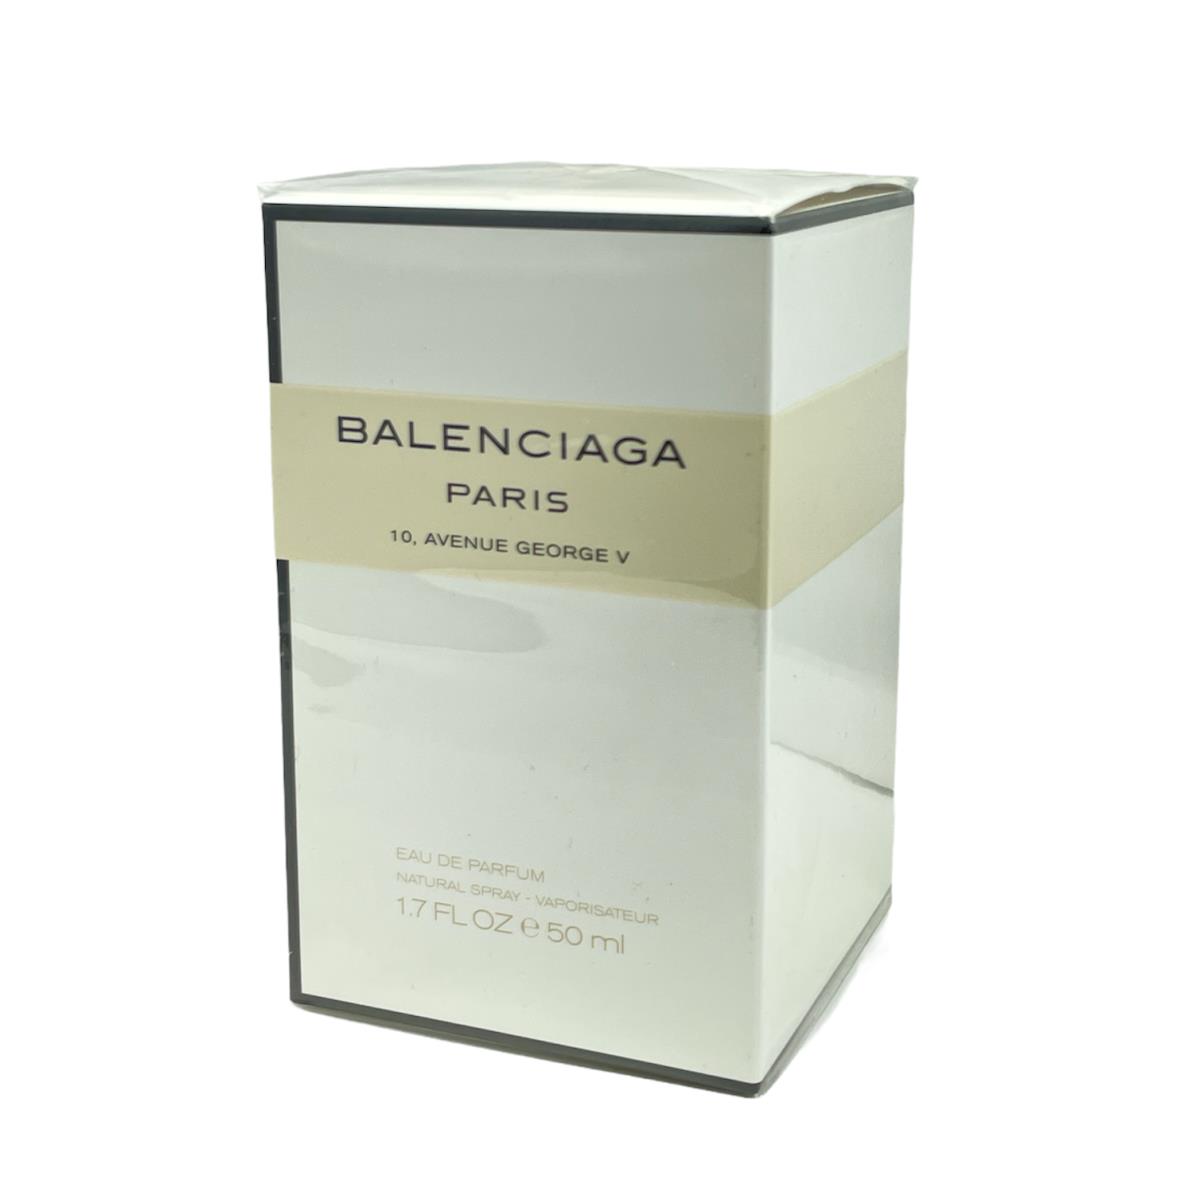 Balenciaga Paris 10. Avenue George V Eau De Parfum Natural Spray 1.7fl.oz./50ml